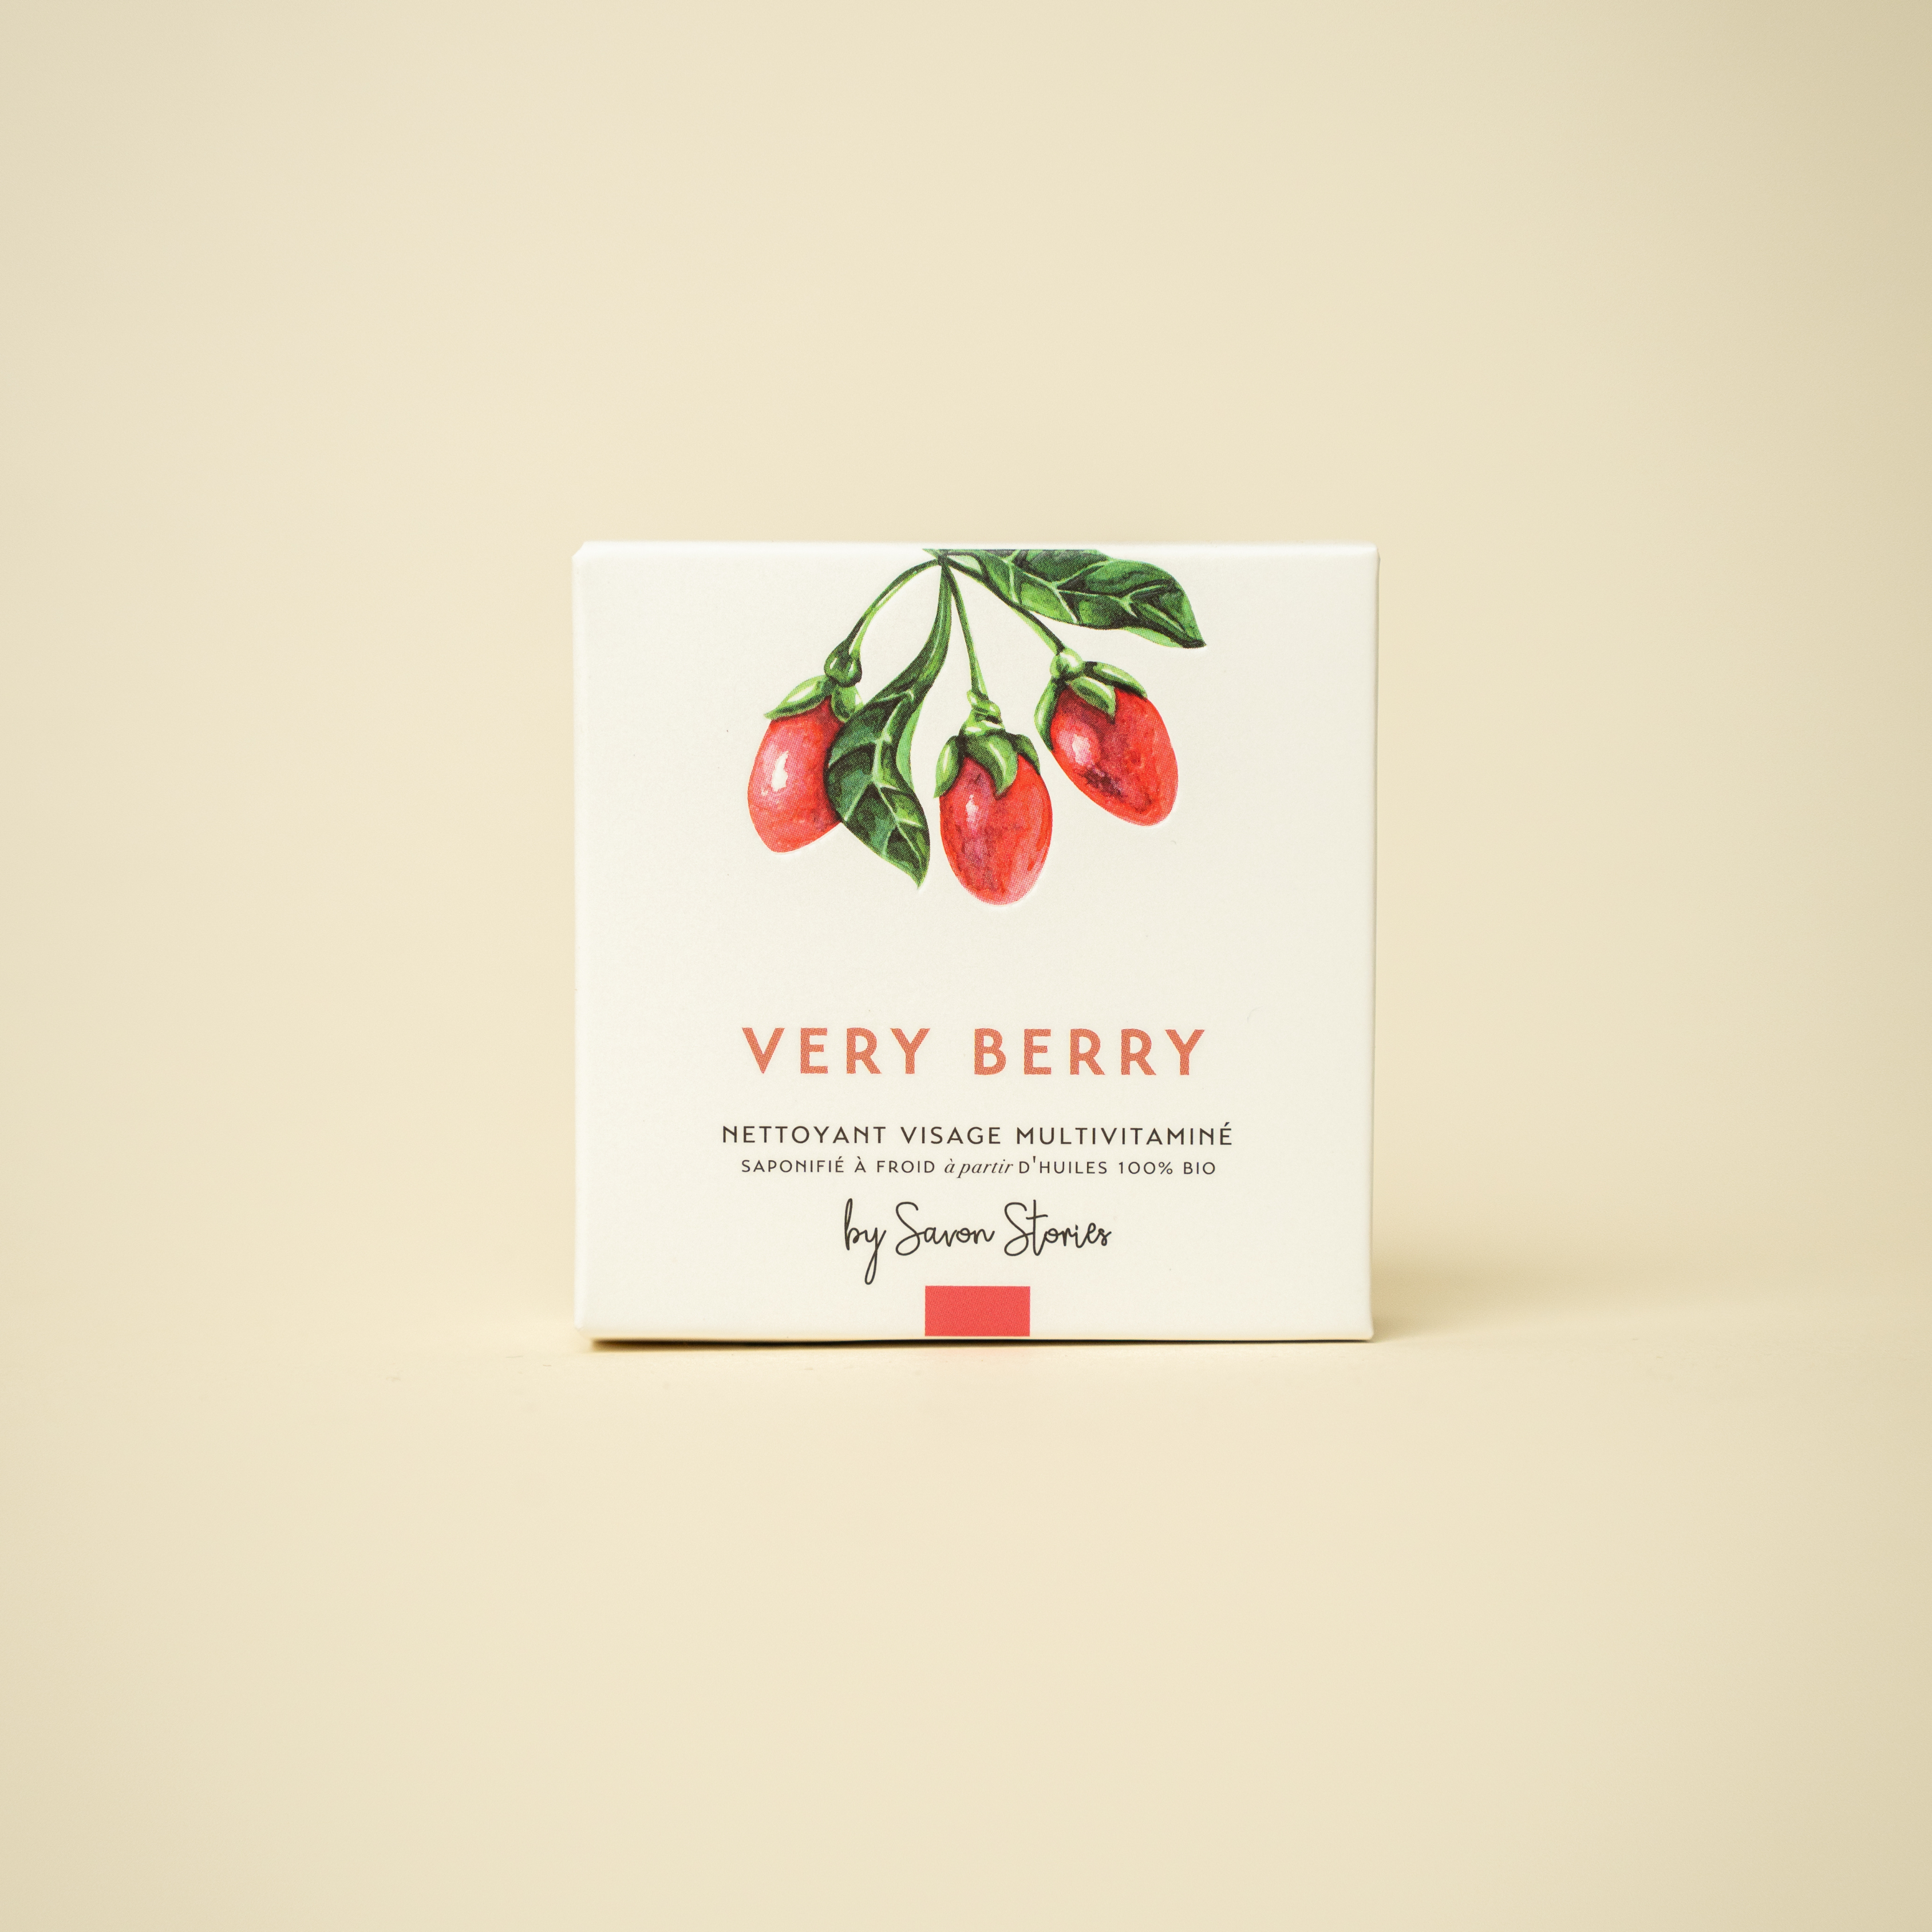 Verry Berry - Nettoyant visage multivitaminé